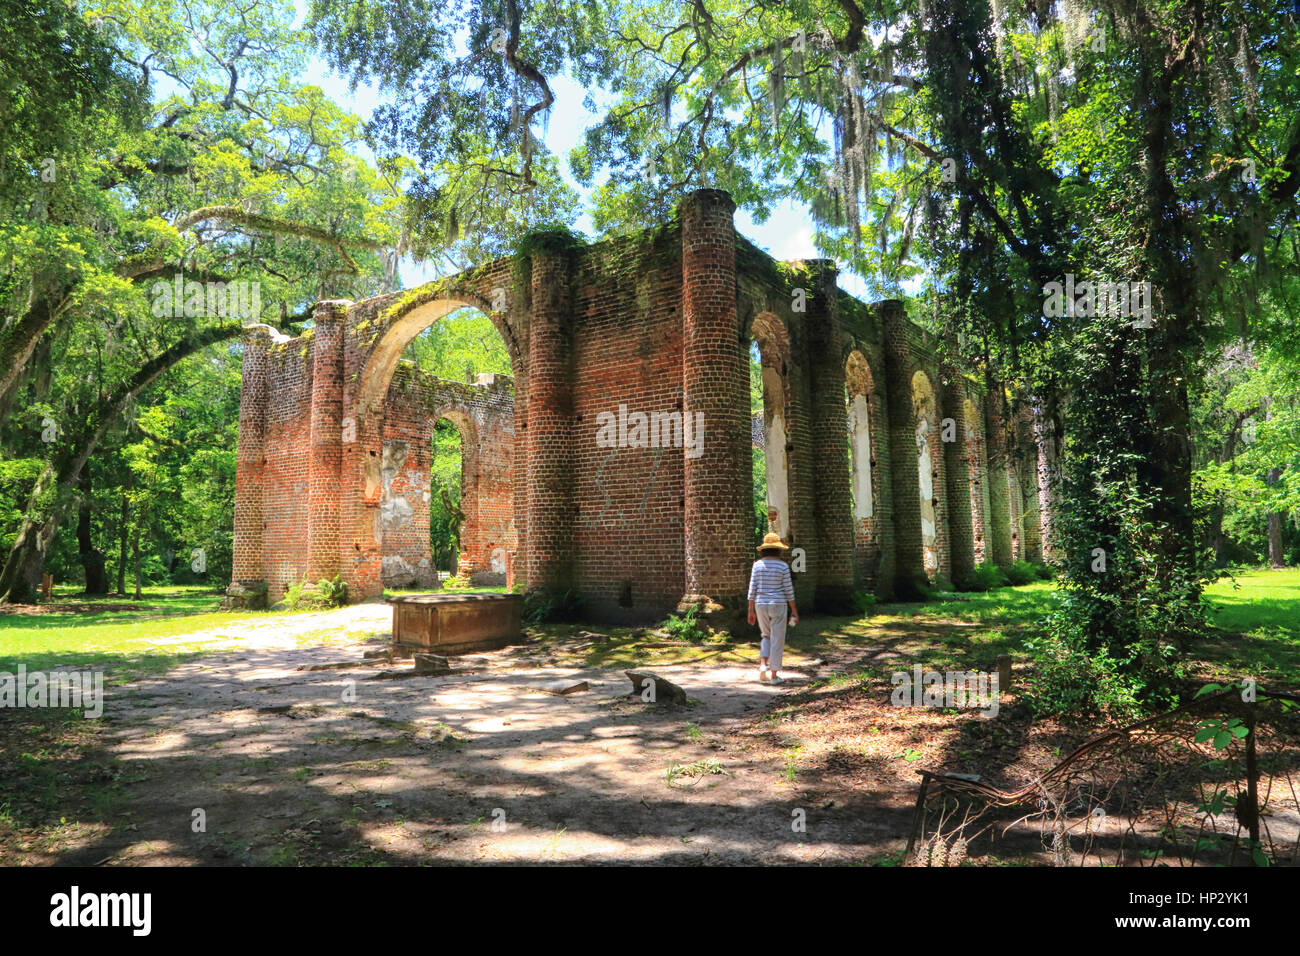 Sheldon Kirche Ruinen in Yemassee, South Carolina sind umrahmt von Live Eichen und spanischem Moos in dieser Landschaftsfoto. Die Ruinen sind dramatisch. Stockfoto